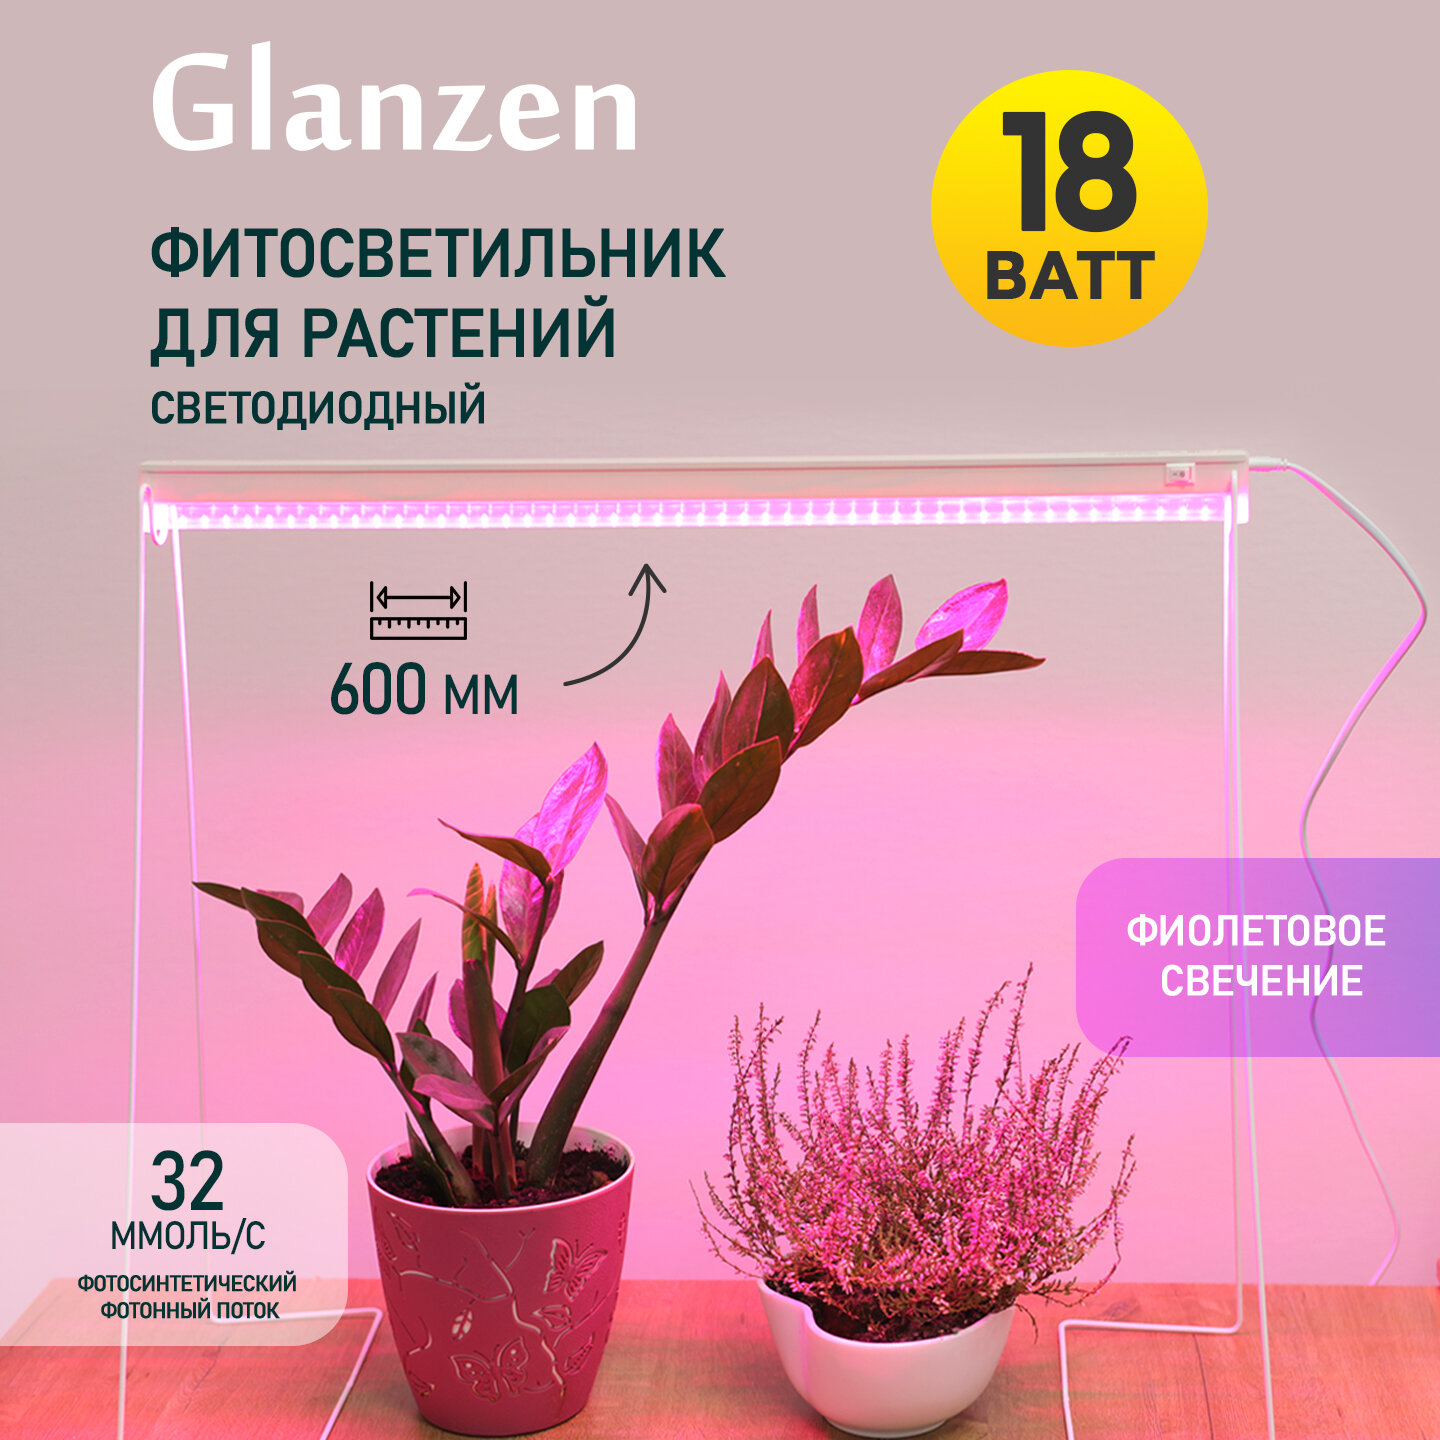 Светодиодный линейный светильник для растений GLANZEN RPD-0600-18-fito